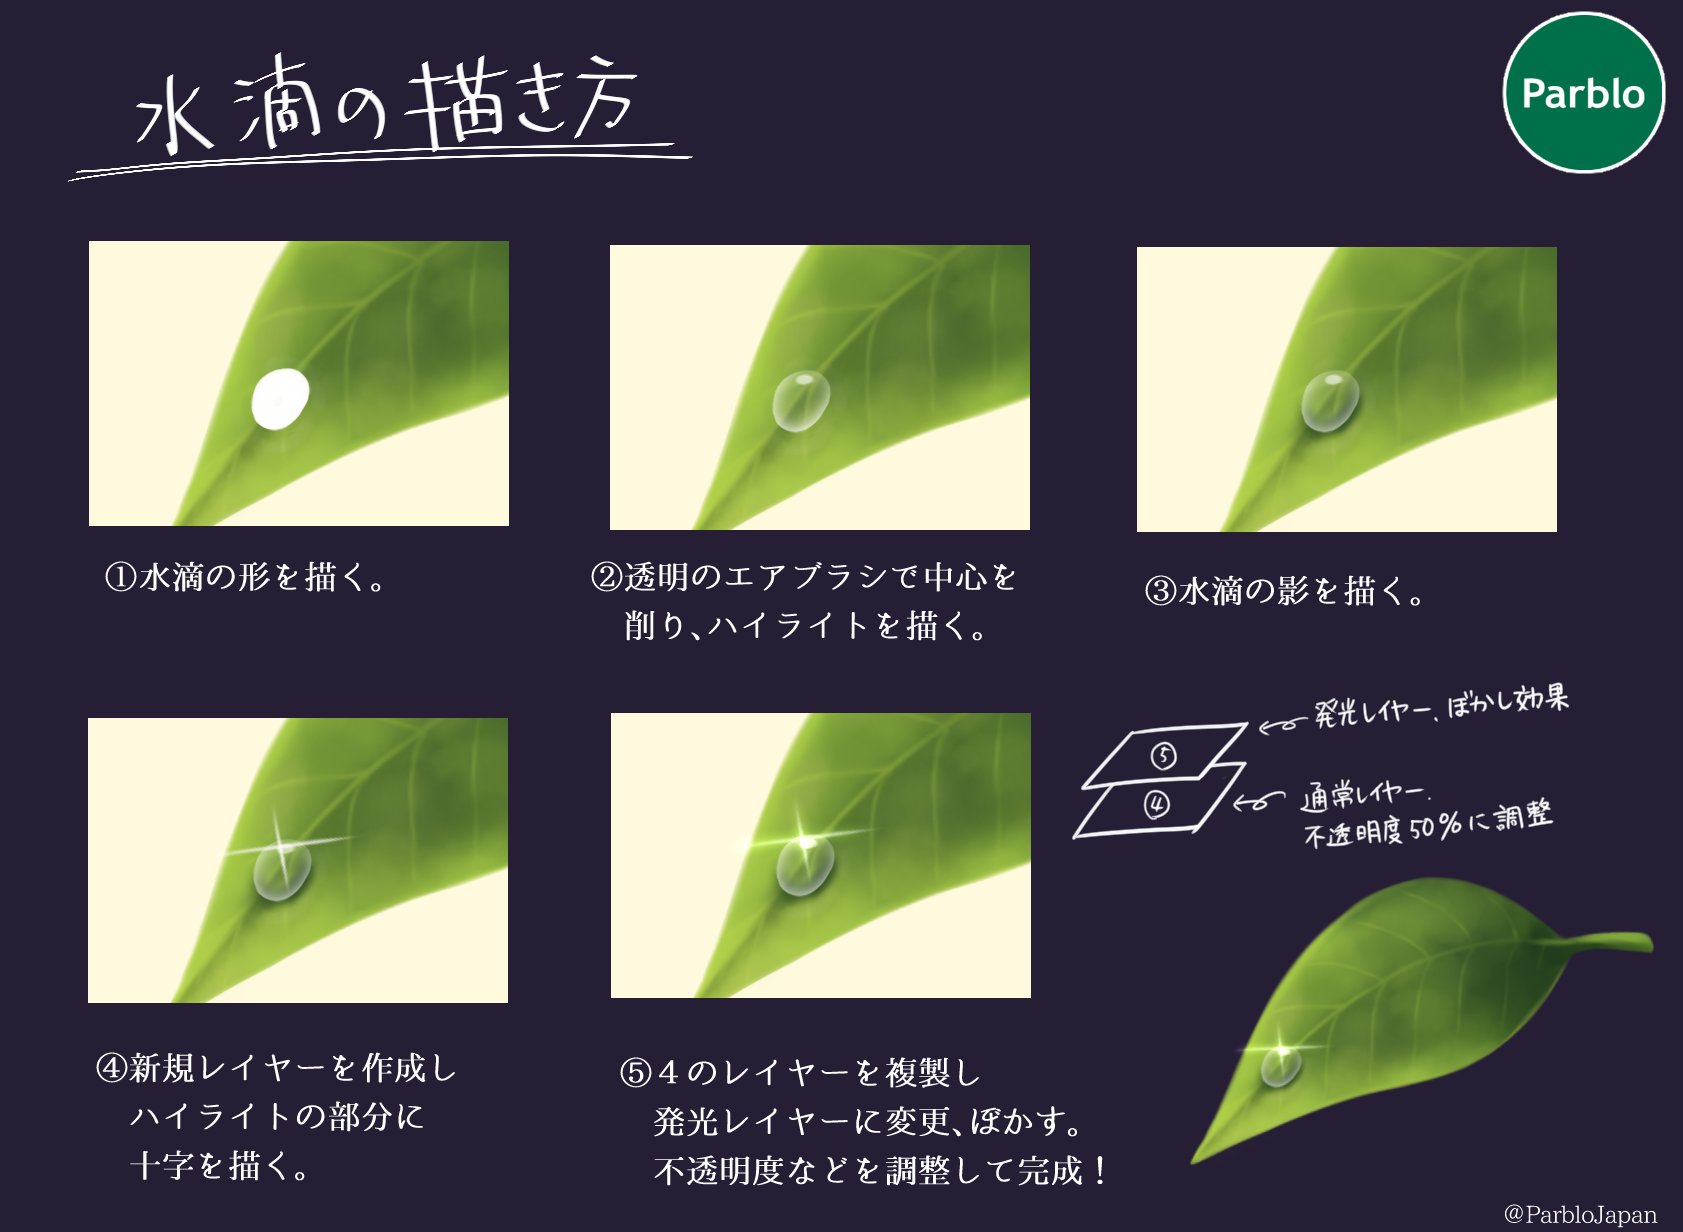 Parblo Japan 在 Twitter 上 水滴の描き方 葉っぱや傘などは水をはじくので一番簡単な まるの形 で描けますね 汗のような垂れている水滴はまたの機会にご紹介します イラスト好きな人と繋がりたい 絵描きさんと繋がりたい Parblo T Co Hjctqvqhsh